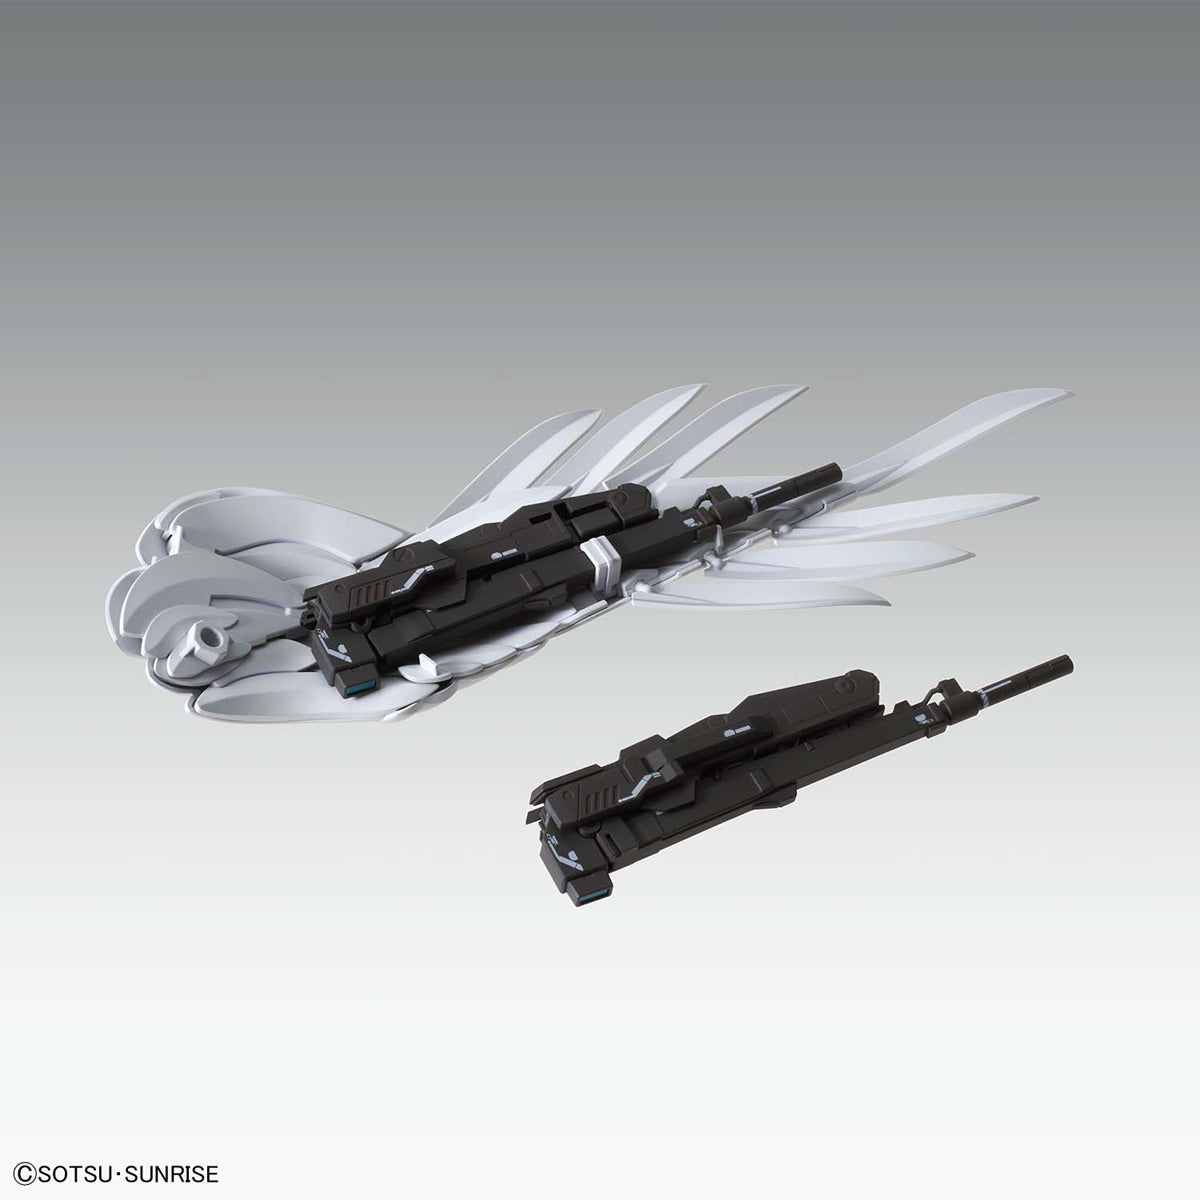 MG - XXXG-00W0 Wing Gundam Zero EW Ver.Ka